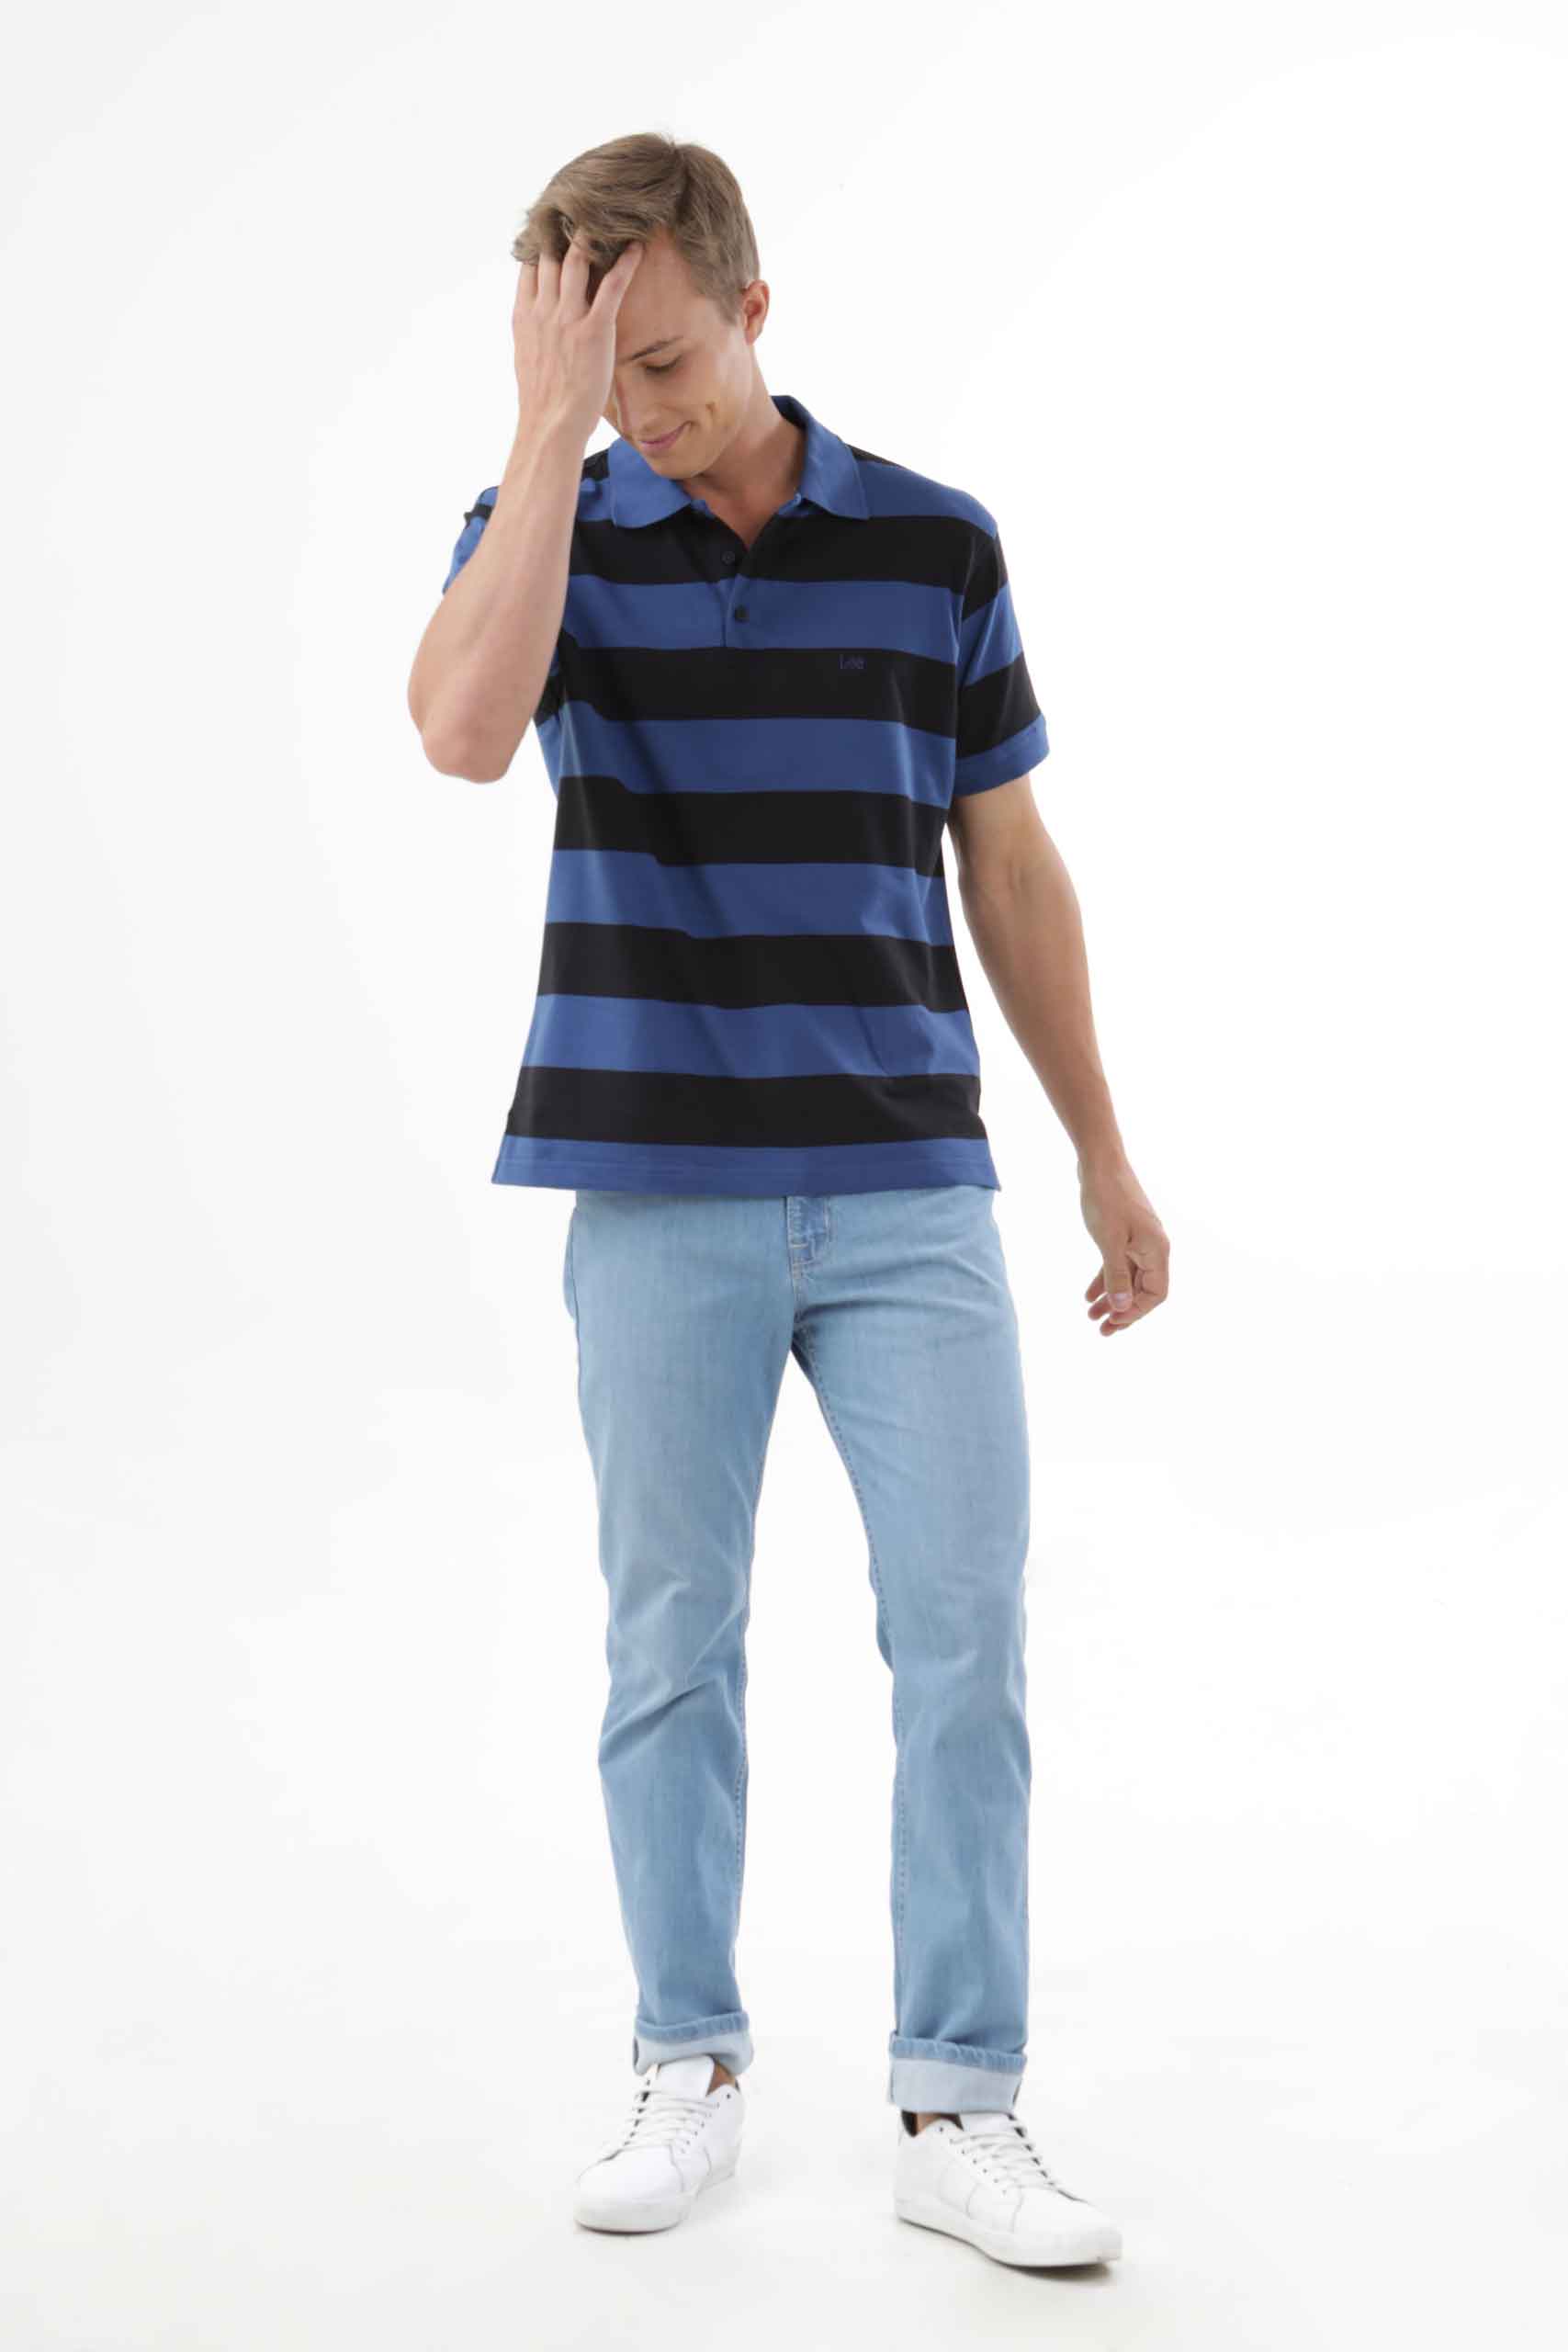 Vista frontal de camiseta polo a rayas de color azul y negro de marca lee